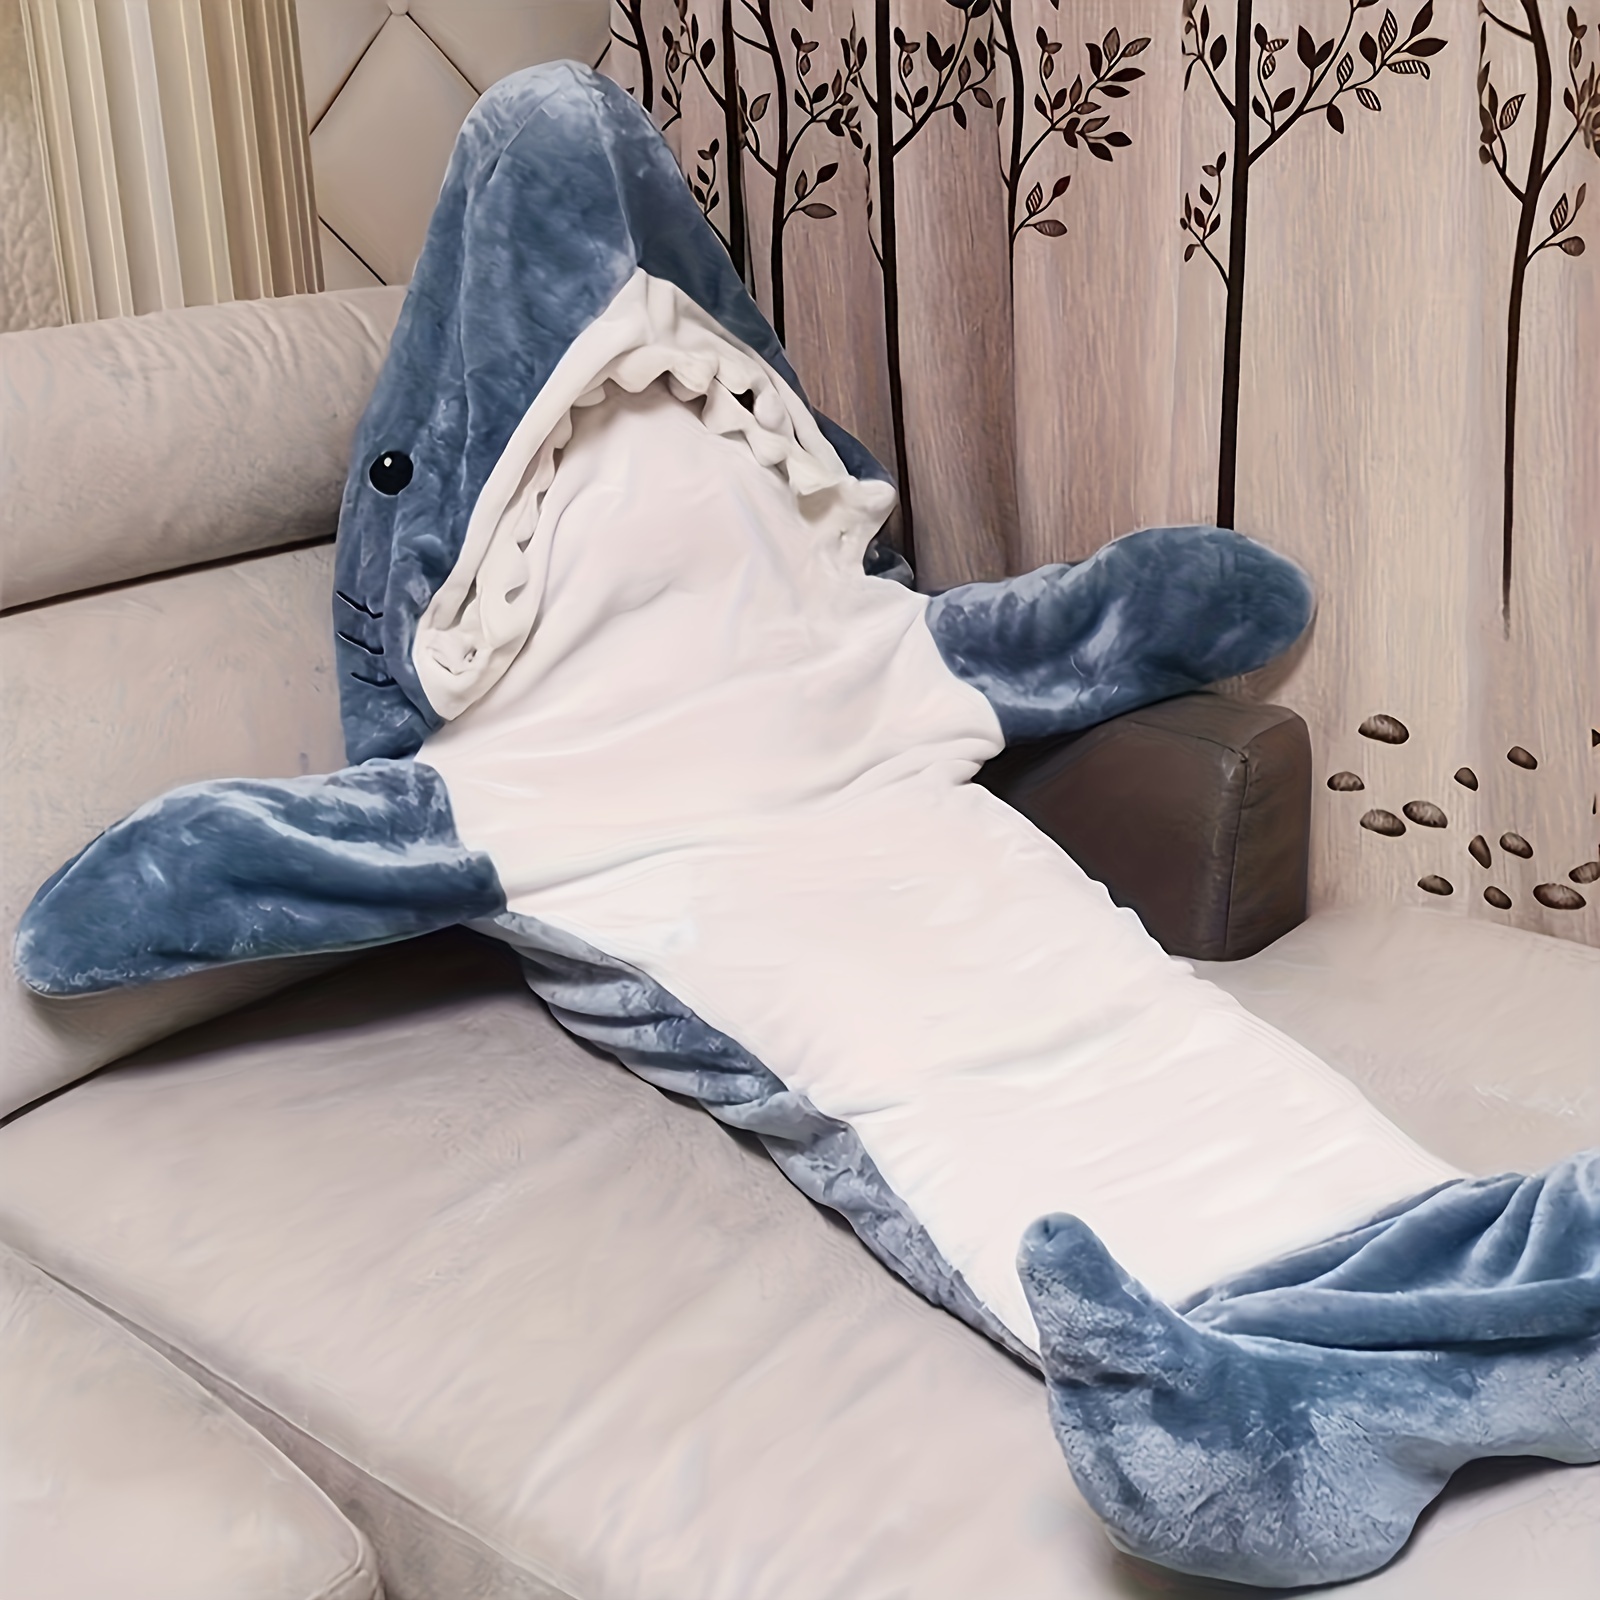  Manta de tiburón, manta de tiburón con capucha, manta de dormir  para el hogar, manta con forma de tiburón, saco de dormir suave con cola de  animal, manta de una pieza